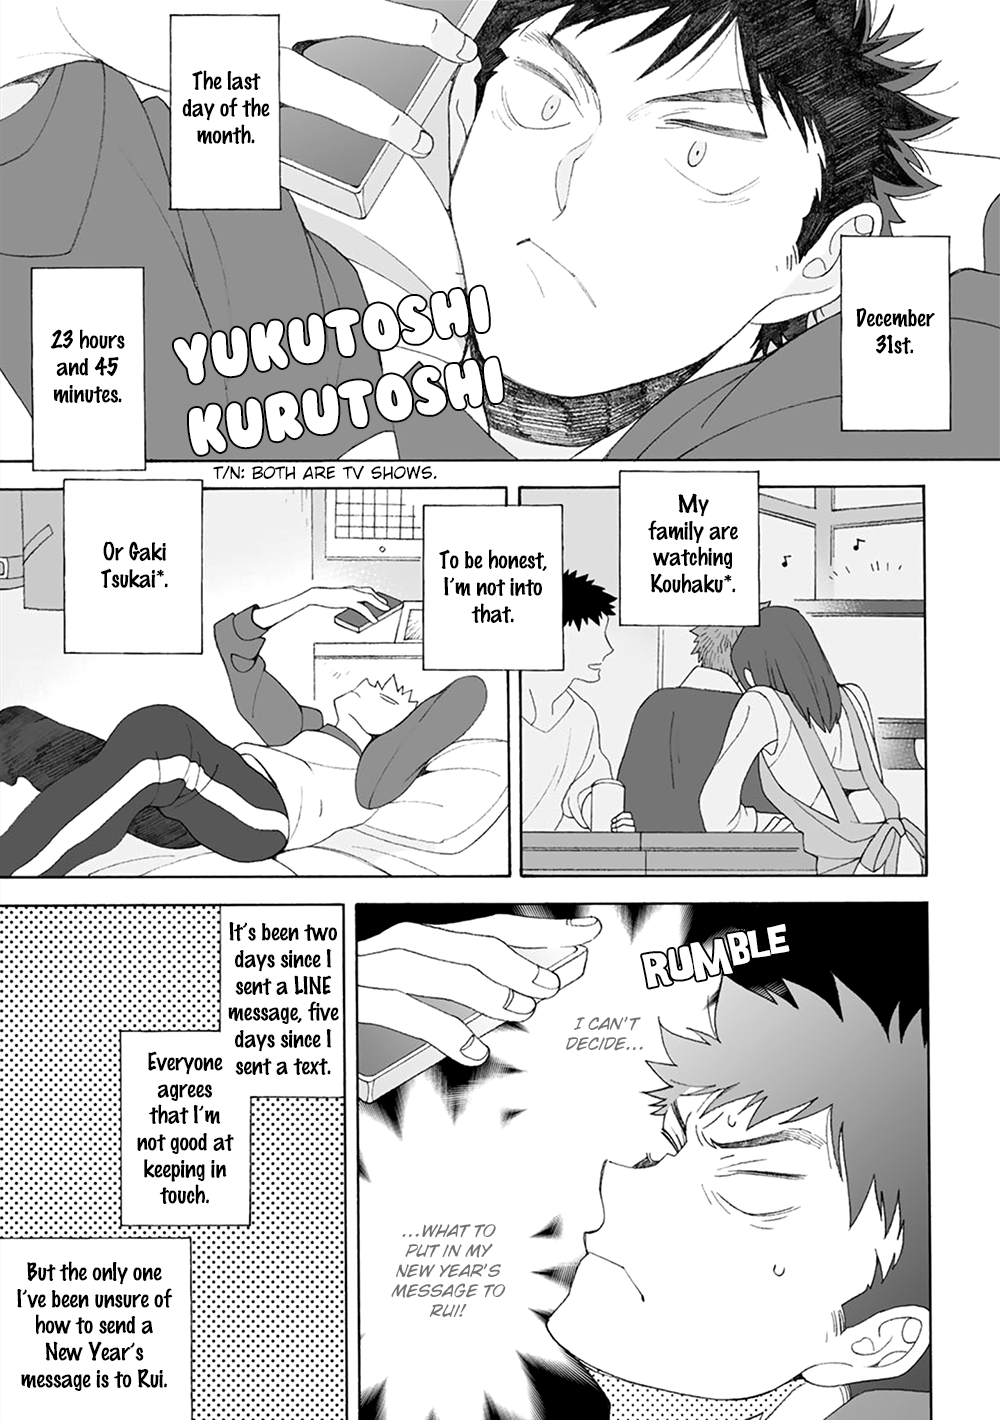 Dekoboko Sugar Days - Page 1